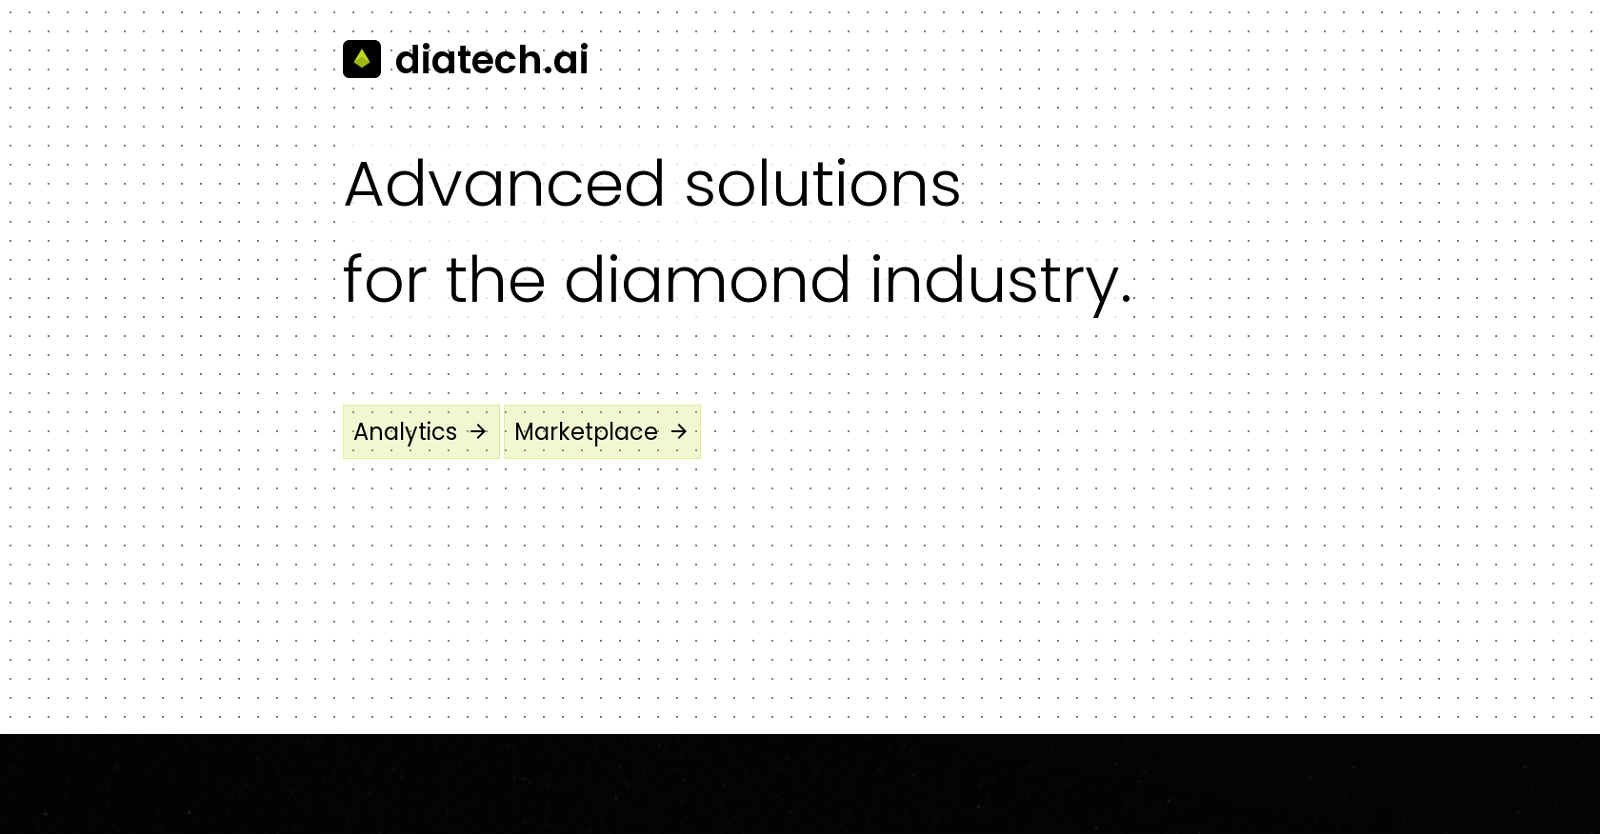 Diatech website